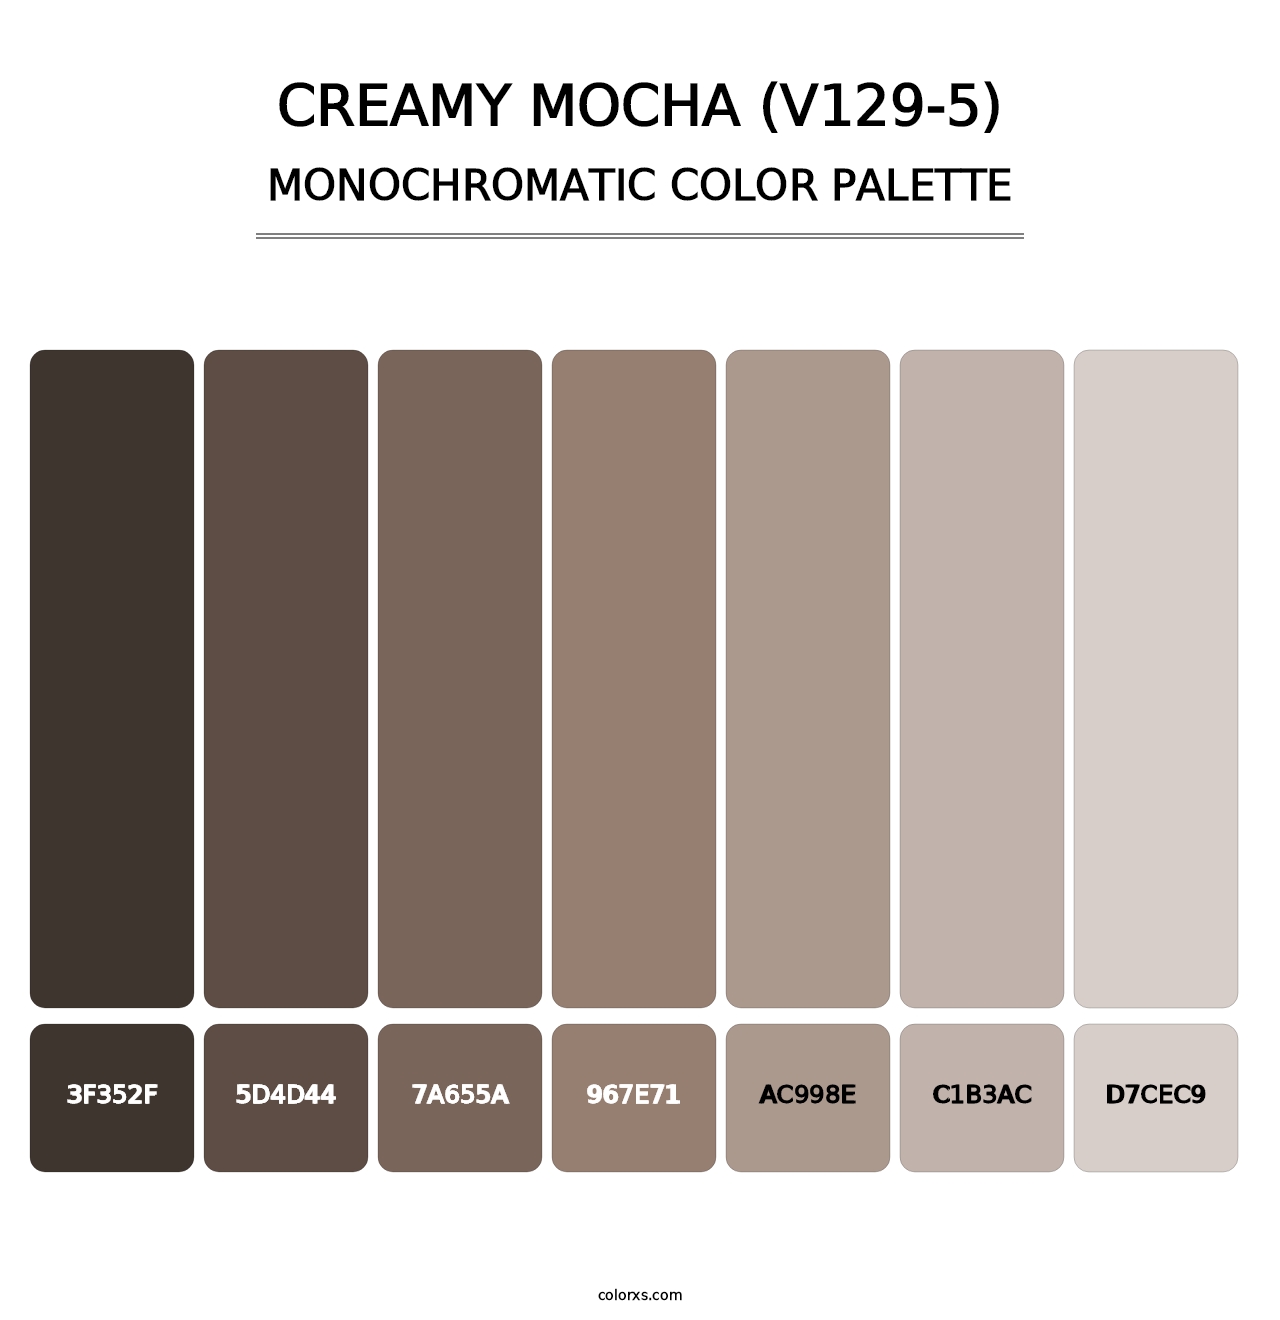 Creamy Mocha (V129-5) - Monochromatic Color Palette